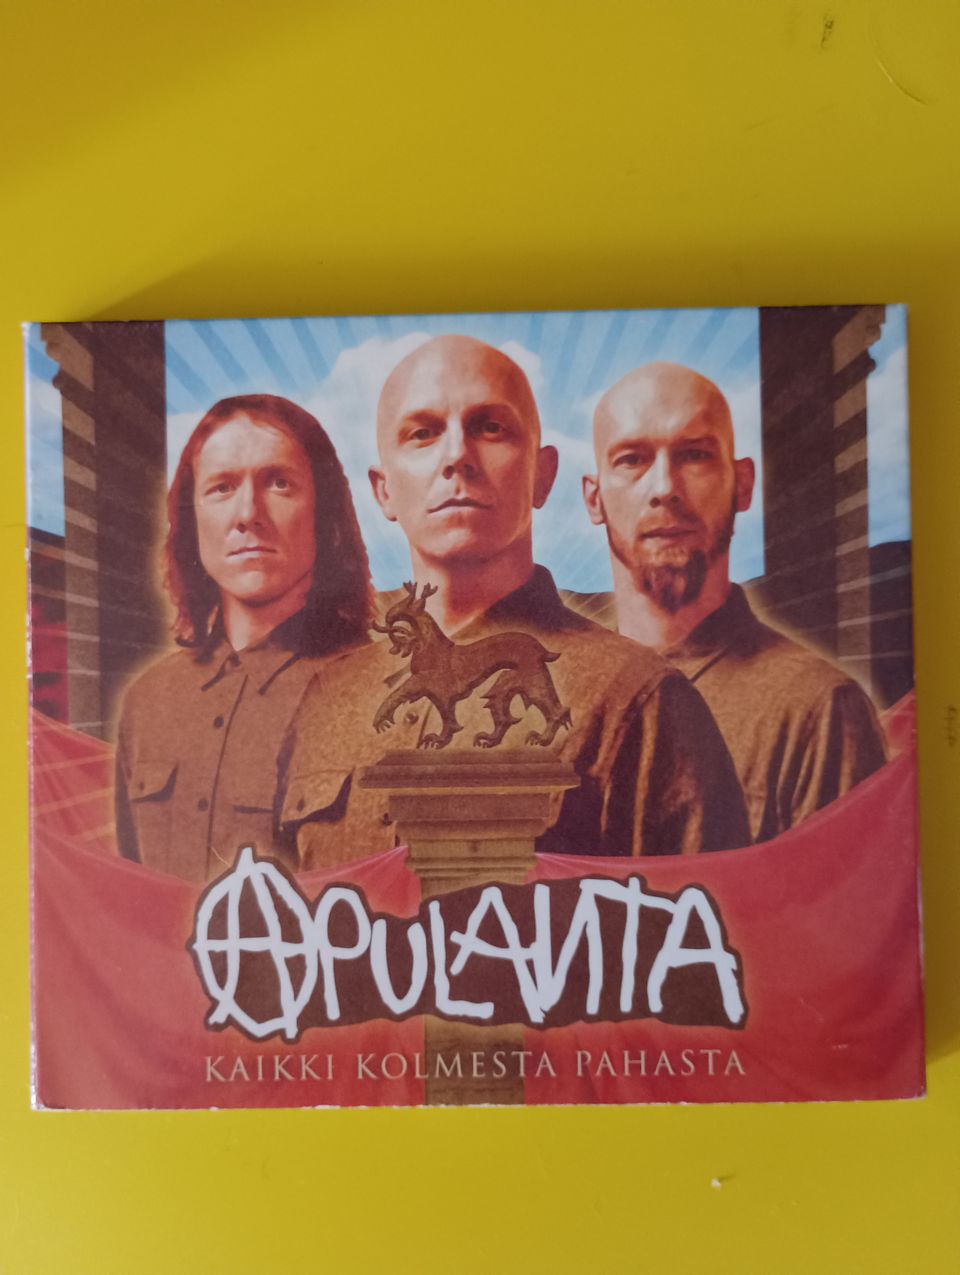 Apulanta - Kaikki kolme pahasta CD